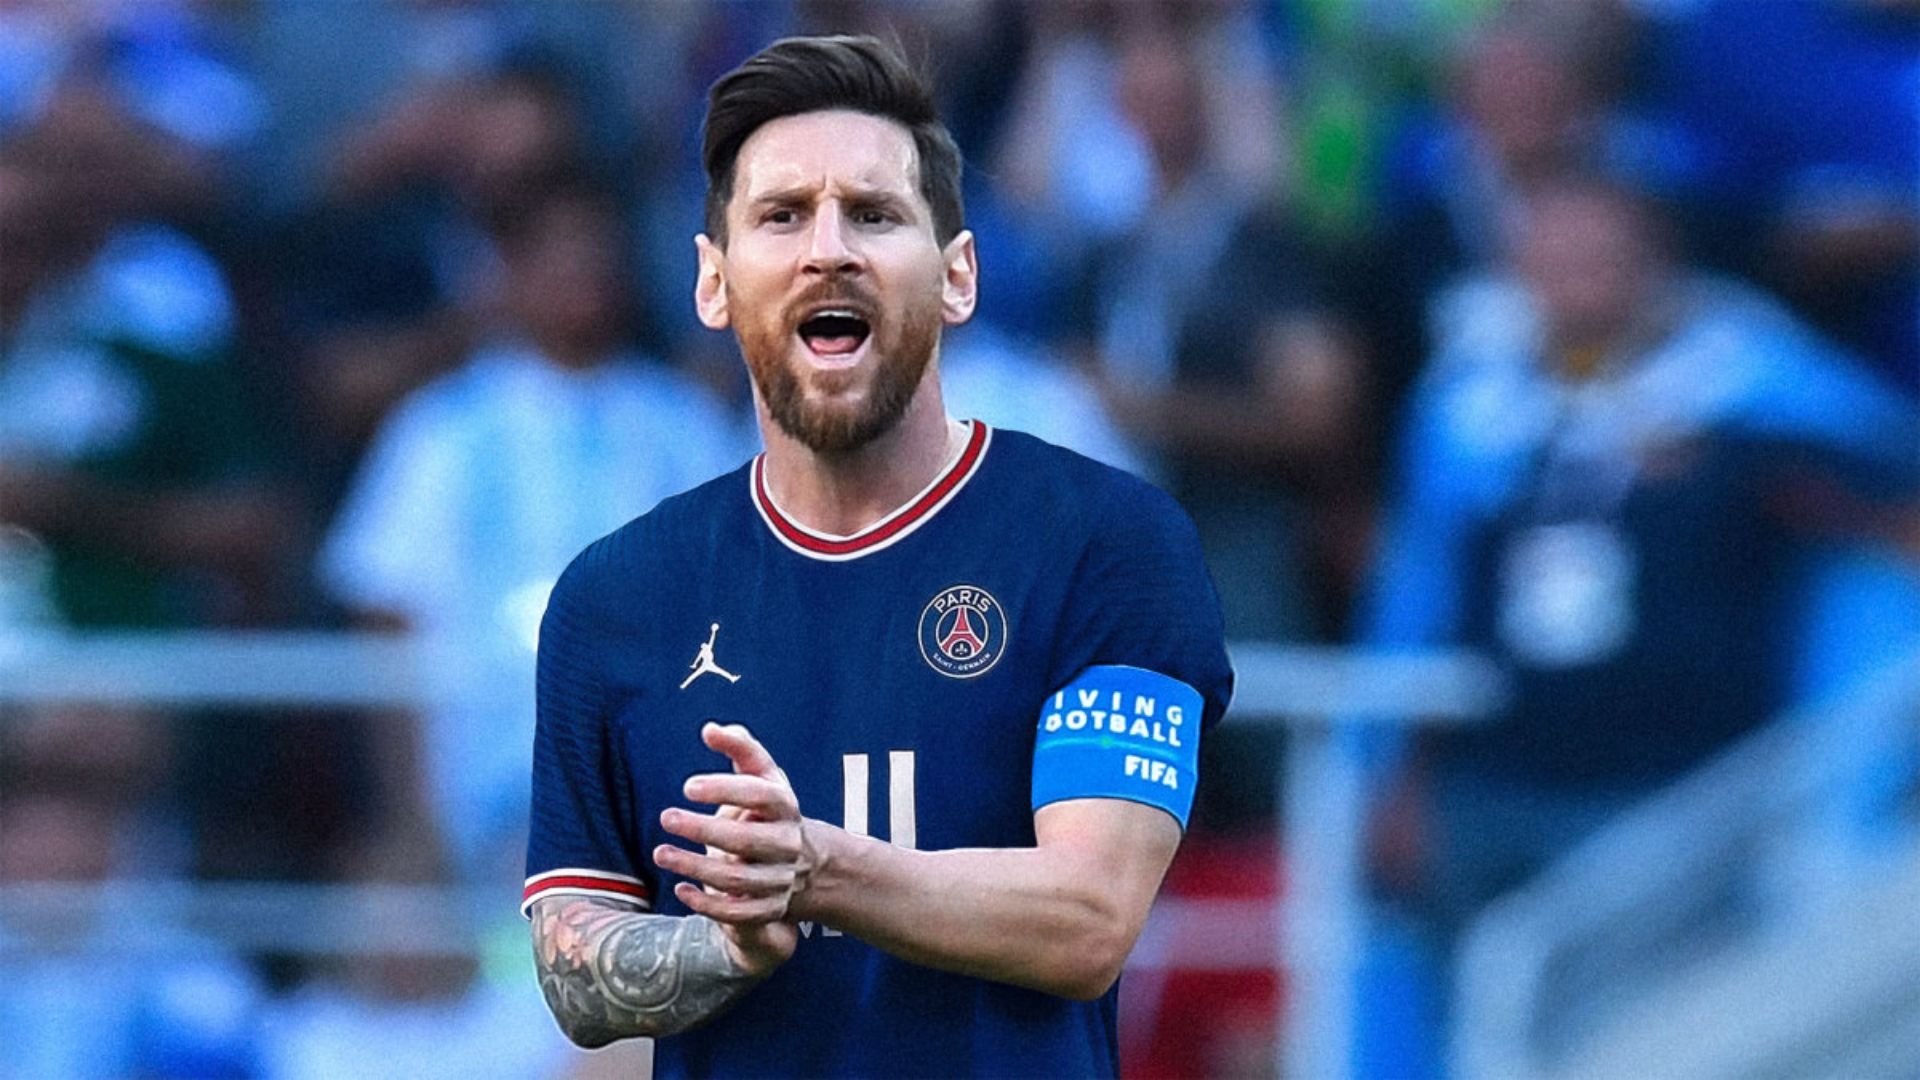 Với Messi PSG Wallpapers, bạn sẽ được thỏa chí ngắm nhìn những hình ảnh đẹp tuyệt vời của ngôi sao Lionel Messi trong bộ trang phục mới của PSG. Hình nền mang tông màu đỏ trắng đầy sức sống sẽ làm cho màn hình điện thoại của bạn trở nên sống động hơn bao giờ hết.